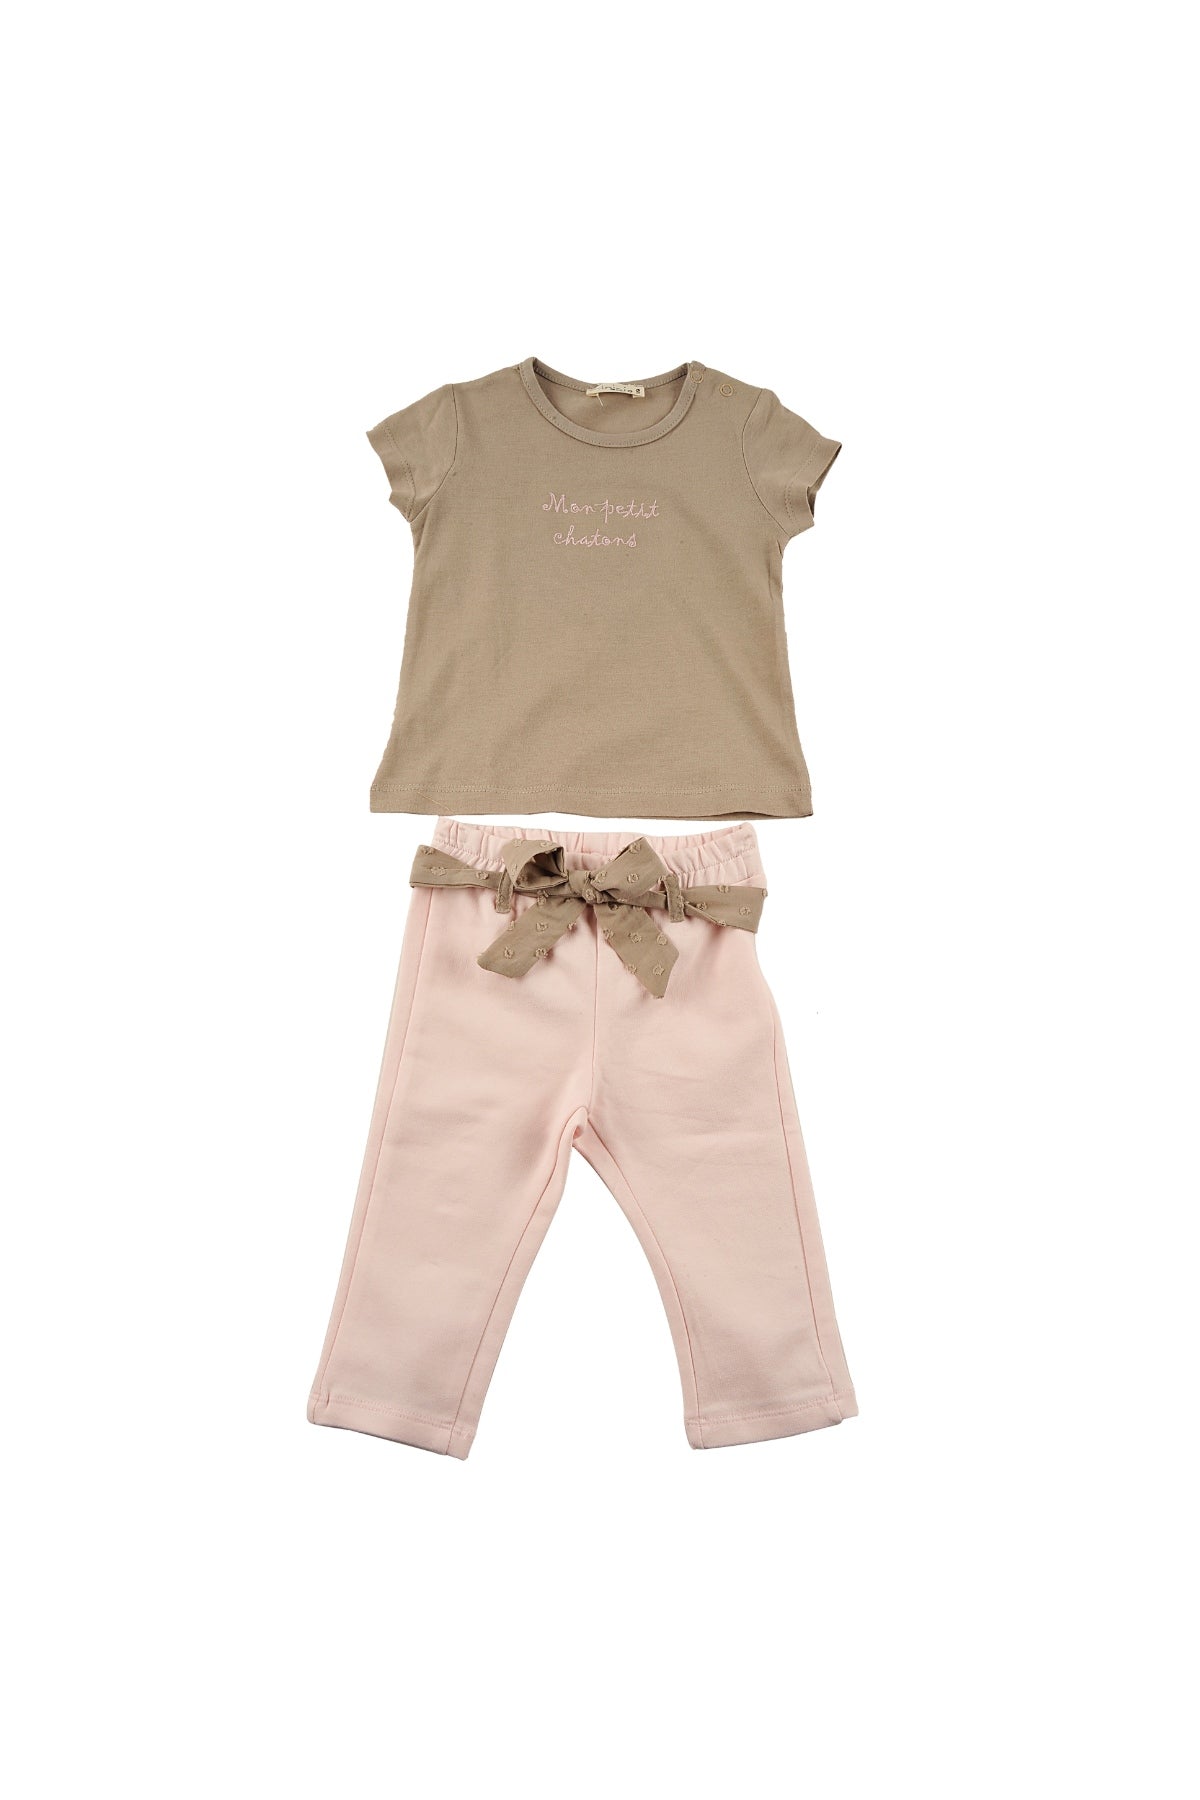 Kız Bebek Mon Petit Chatons T-Shirt ve Örme Pantolon Takım (6ay-4yaş)-2